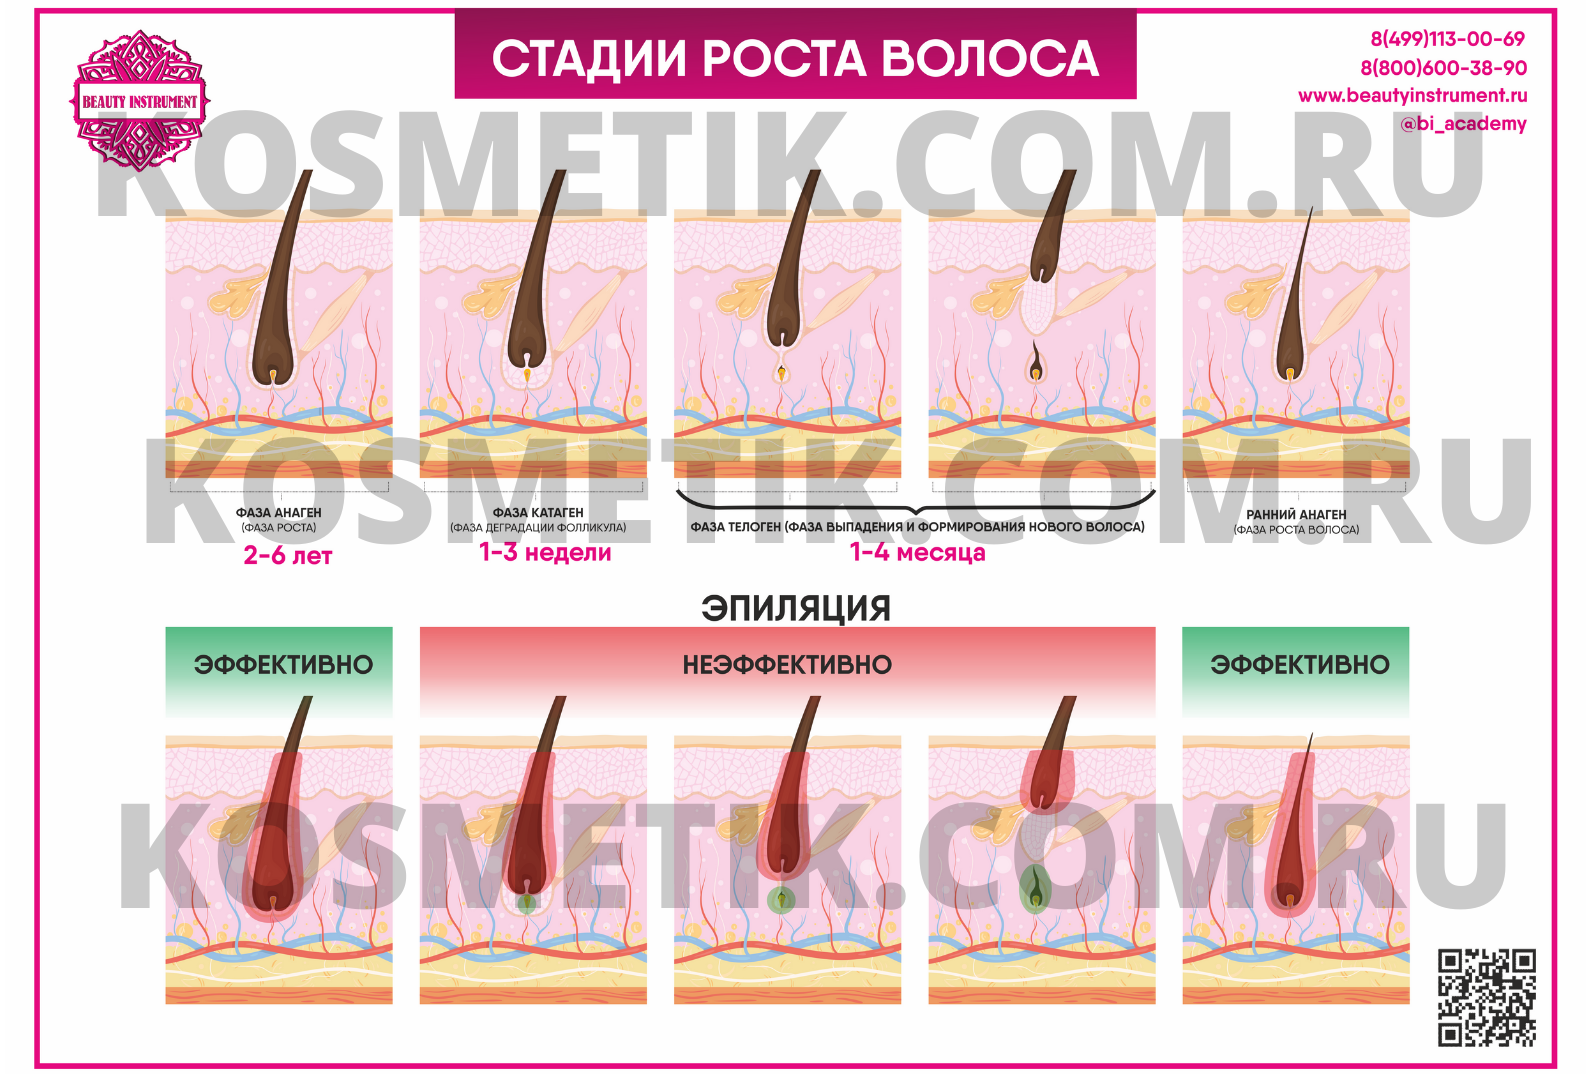 Плакат для косметолога "Стадии роста волос и эффективность эпиляции"